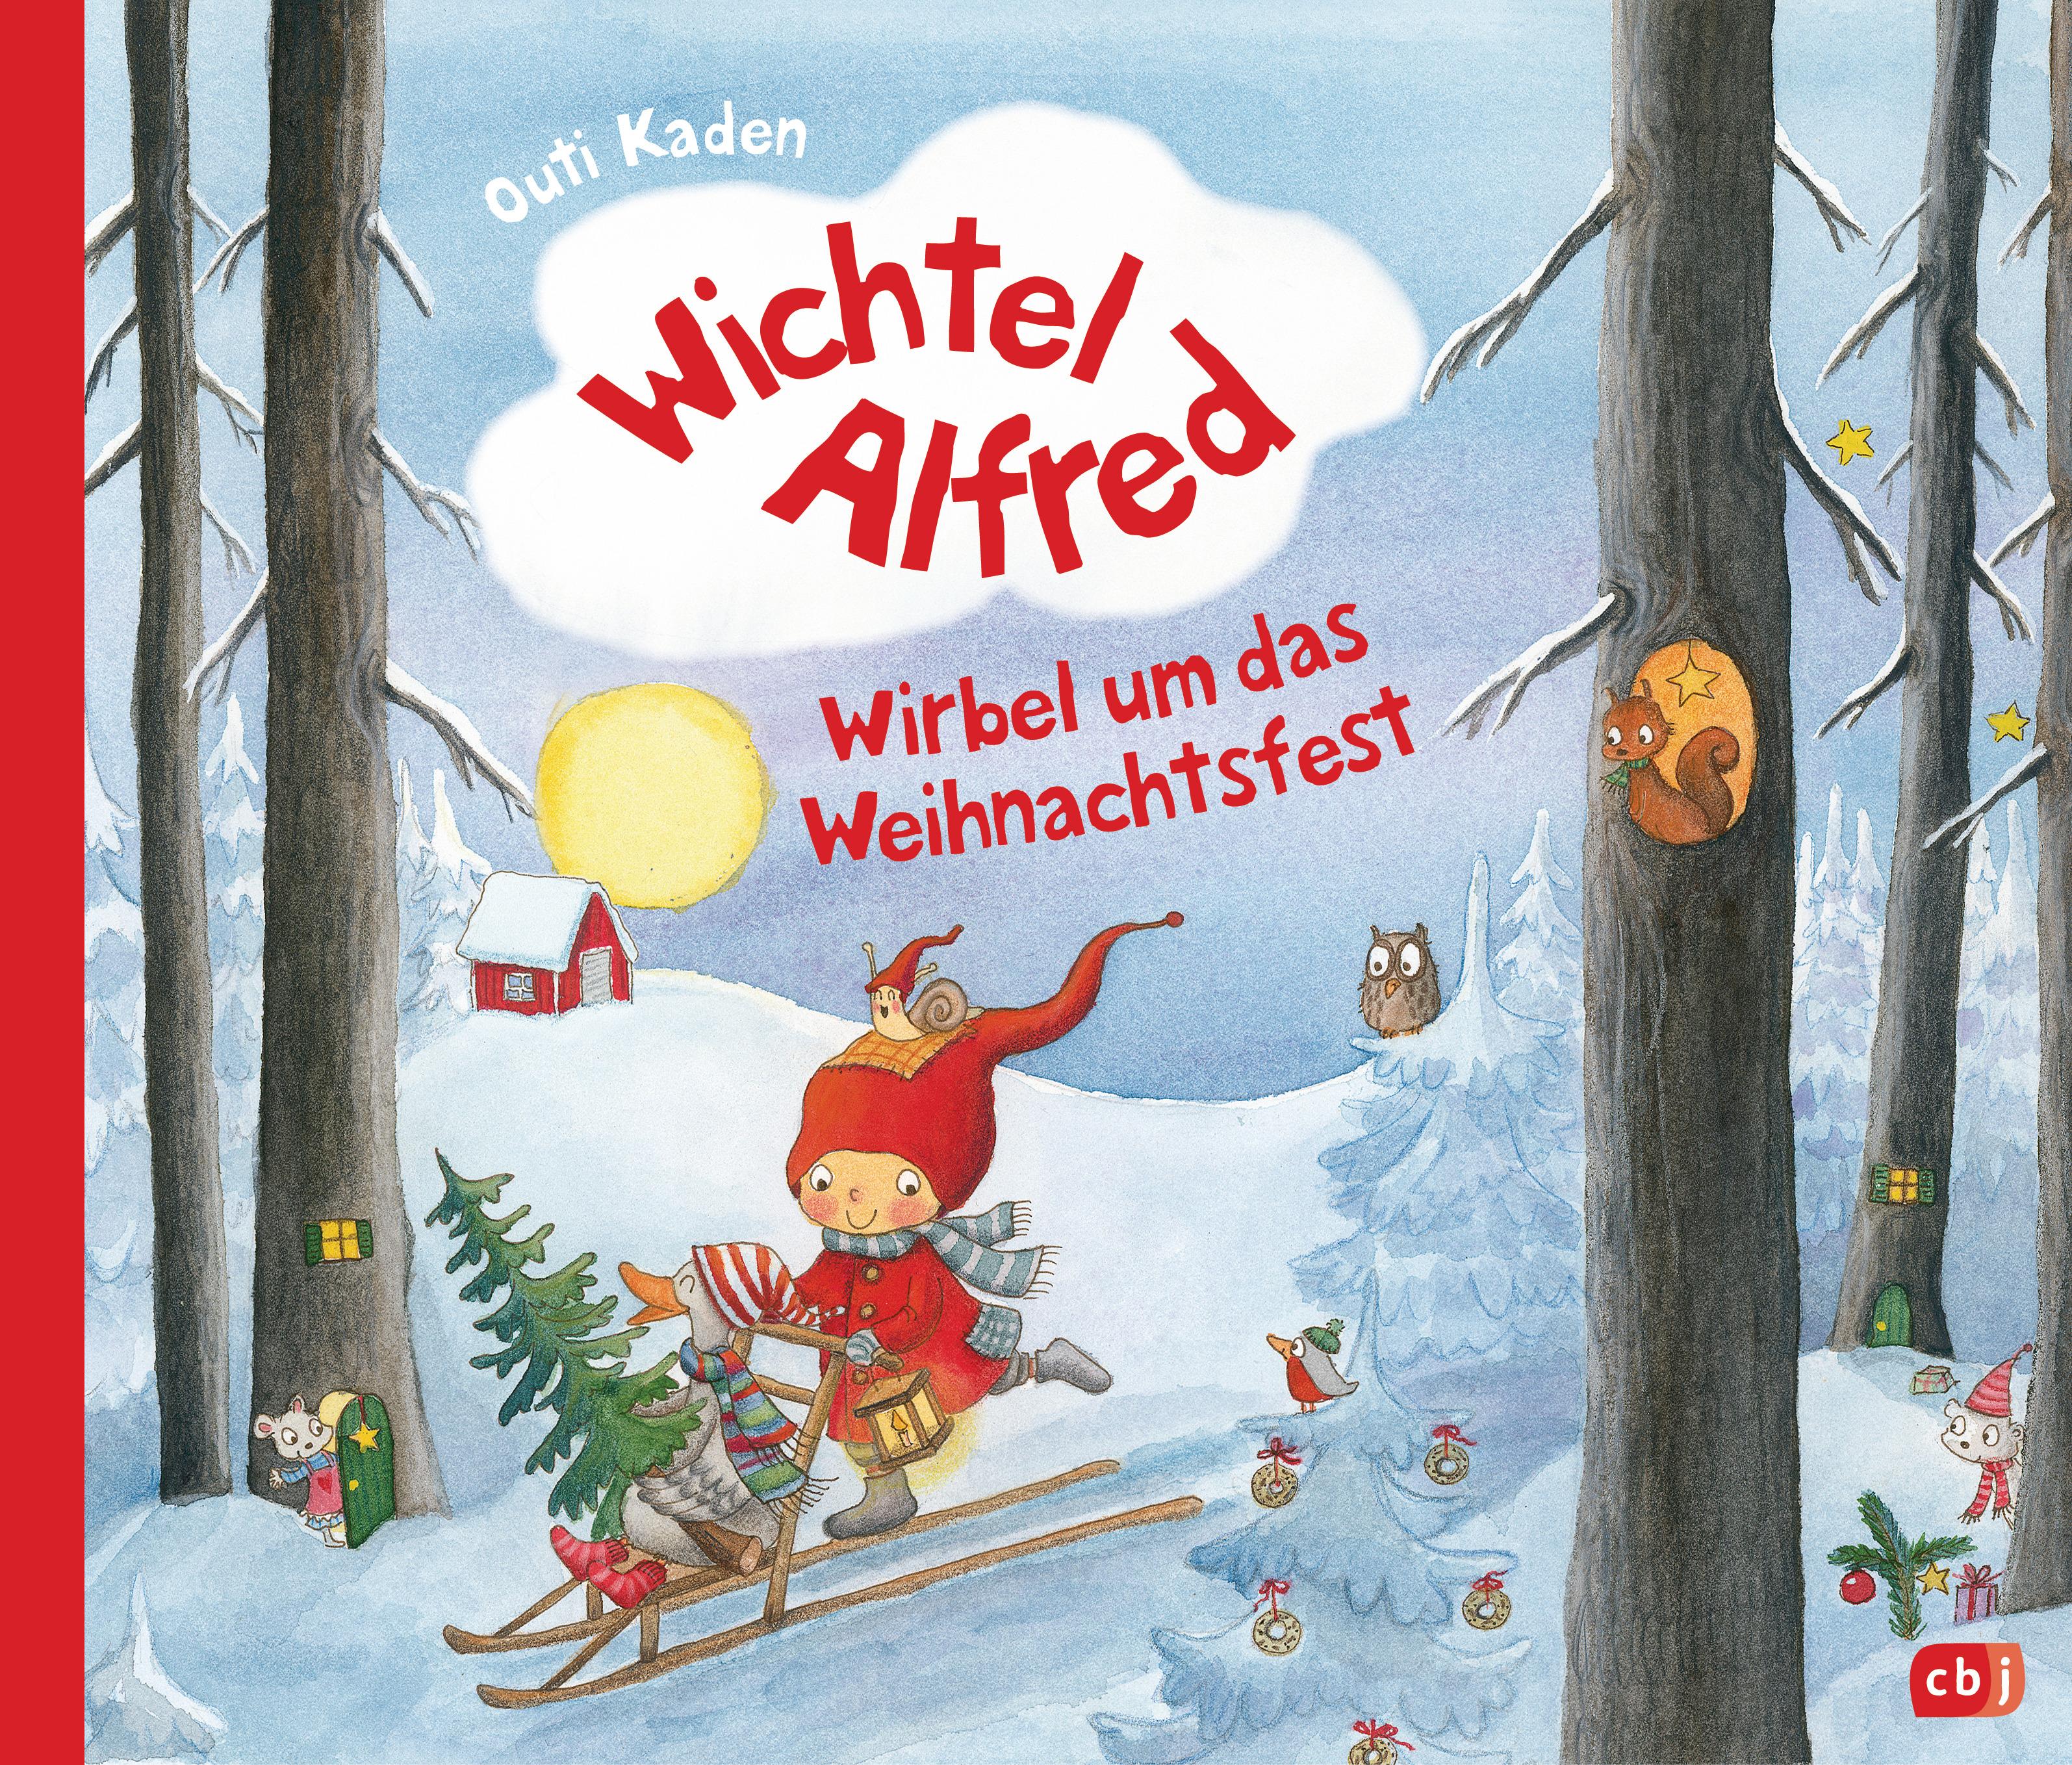 Wichtel Alfred - Wirbel um das Weihnachtsfest; Warmherziges Bilderbuch ab 3 Jahre; Die Wichtel Alfre